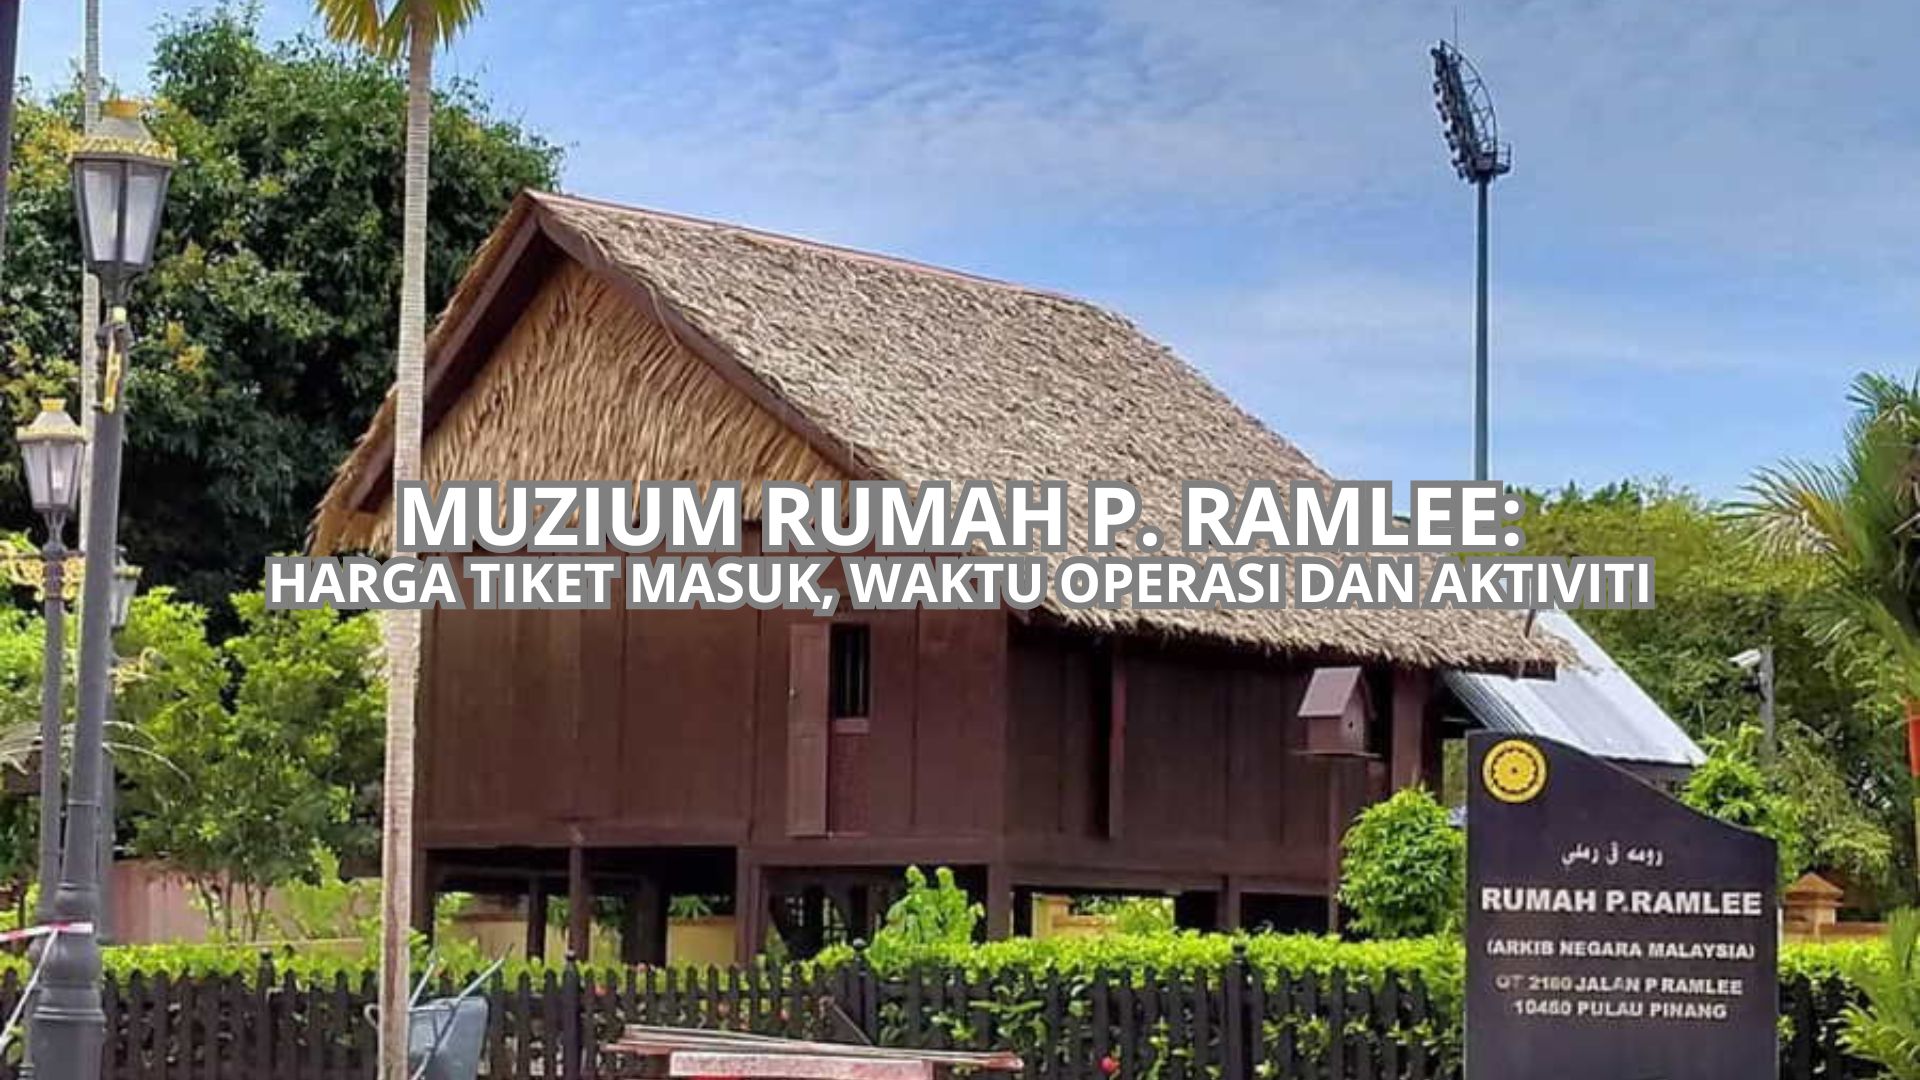 Muzium Rumah P. Ramlee Cover